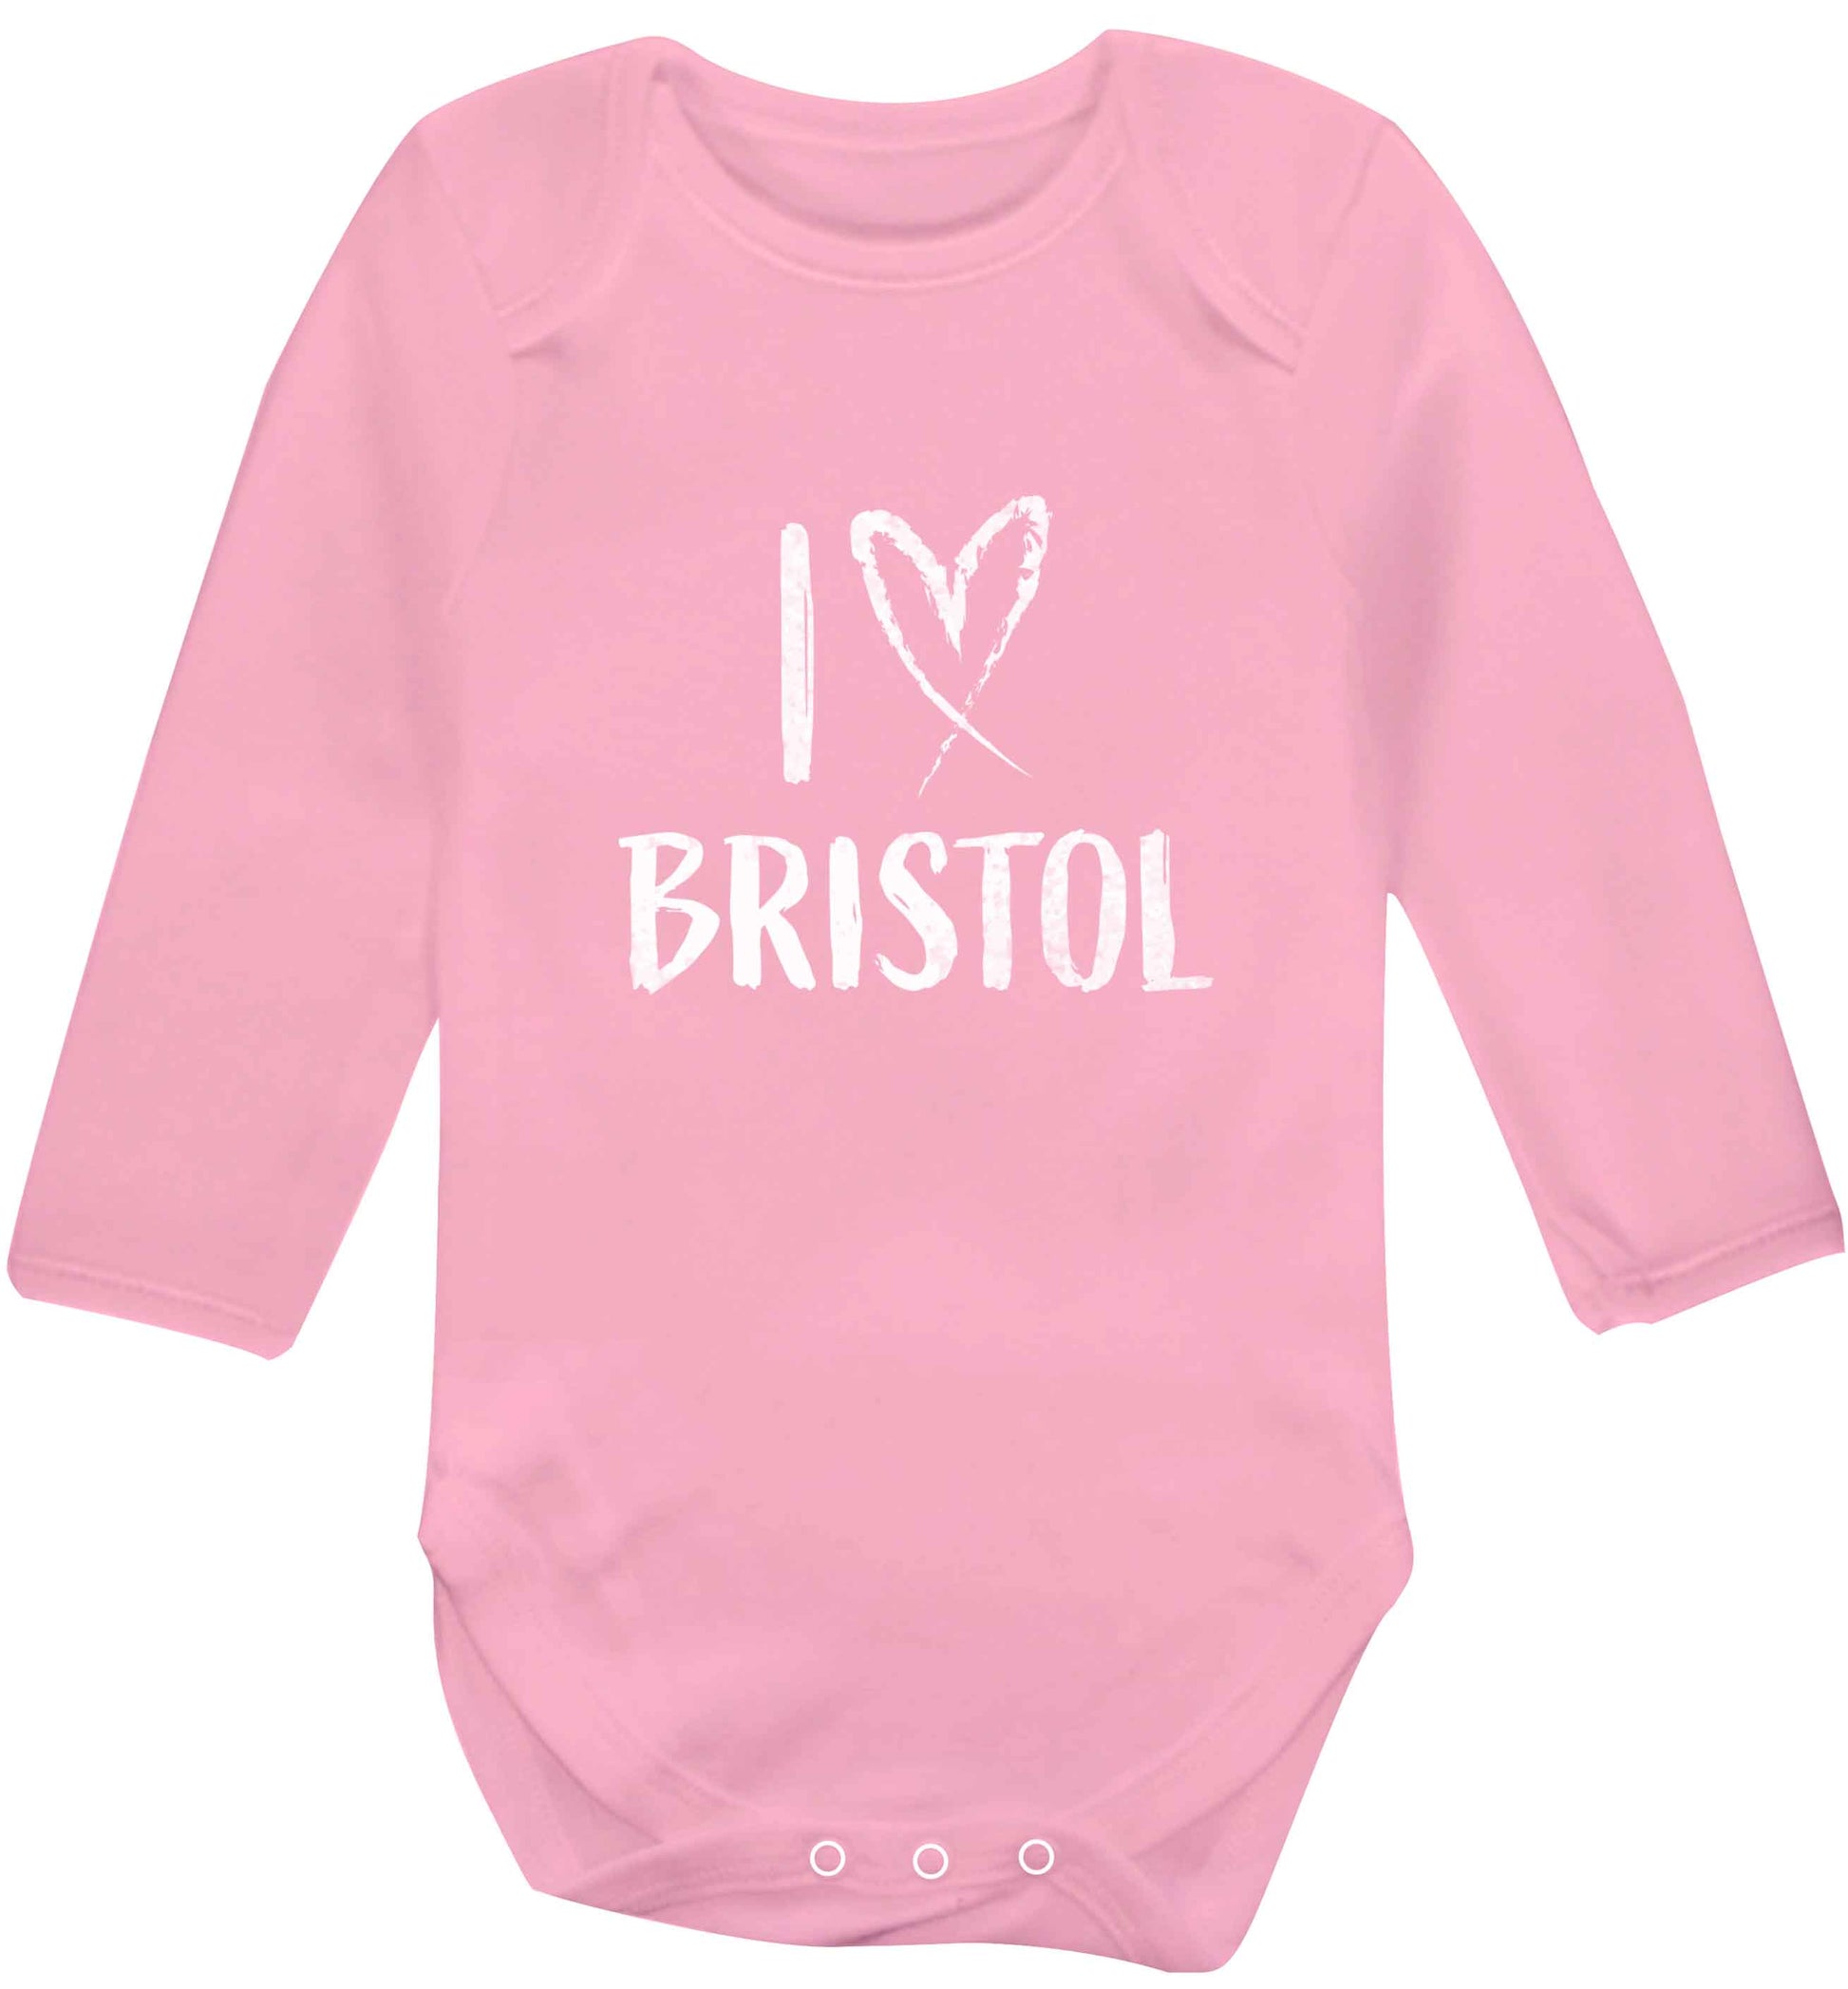 I love Bristol baby vest long sleeved pale pink 6-12 months